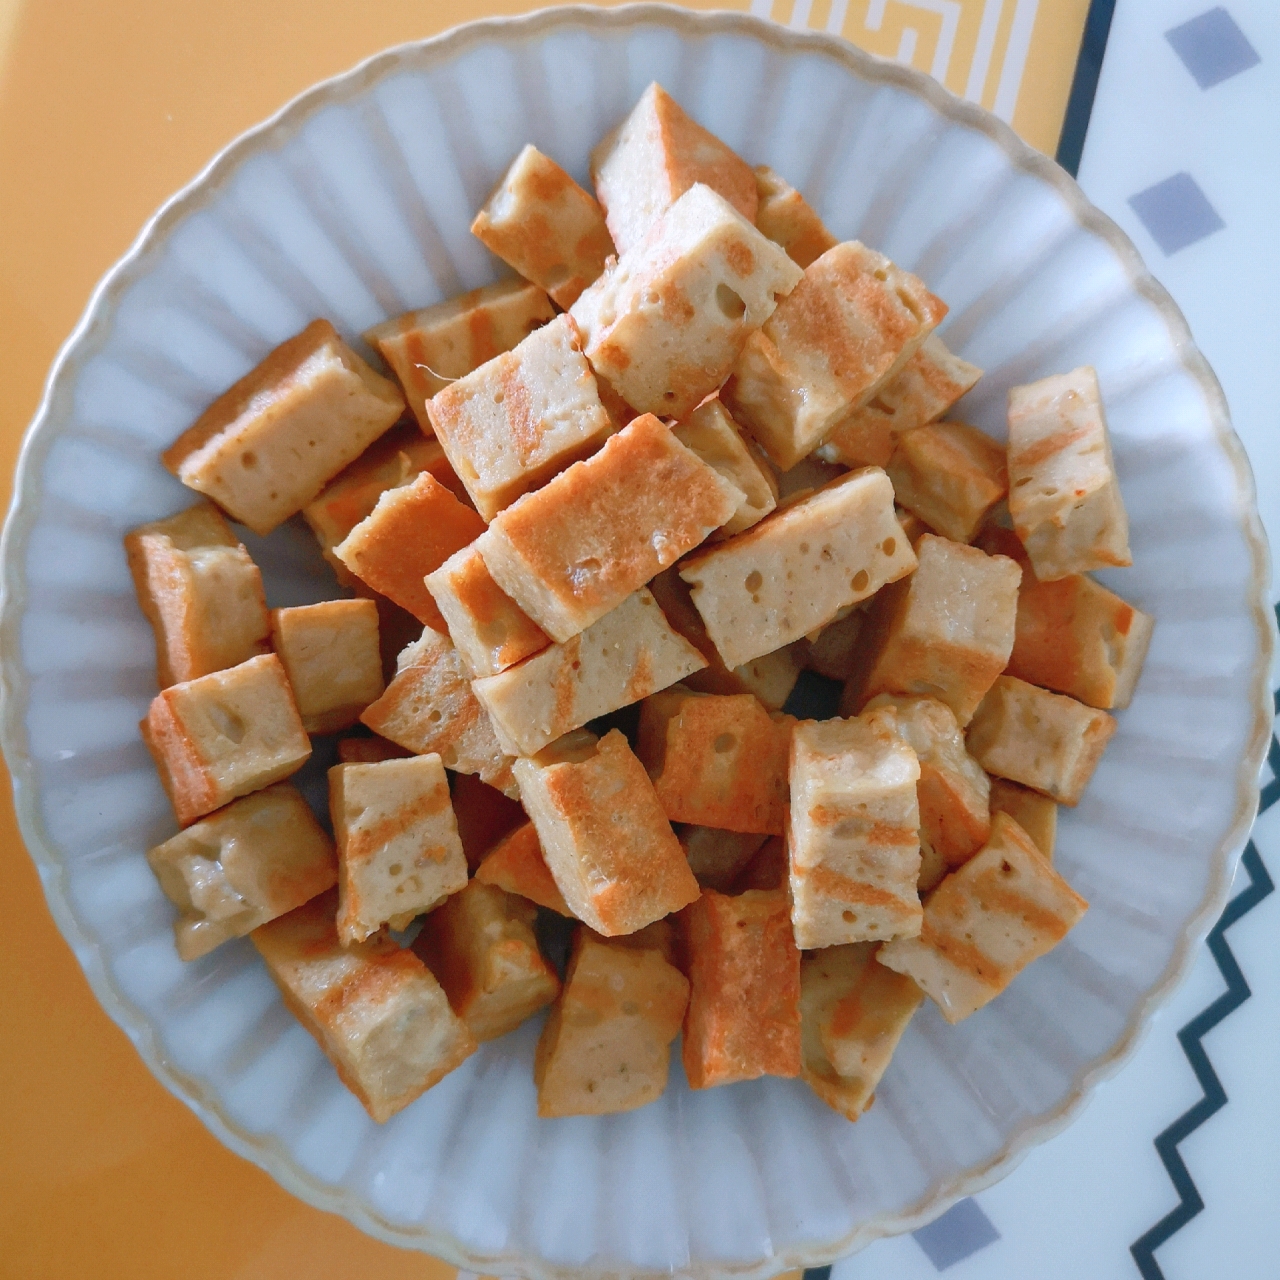 自制鱼豆腐